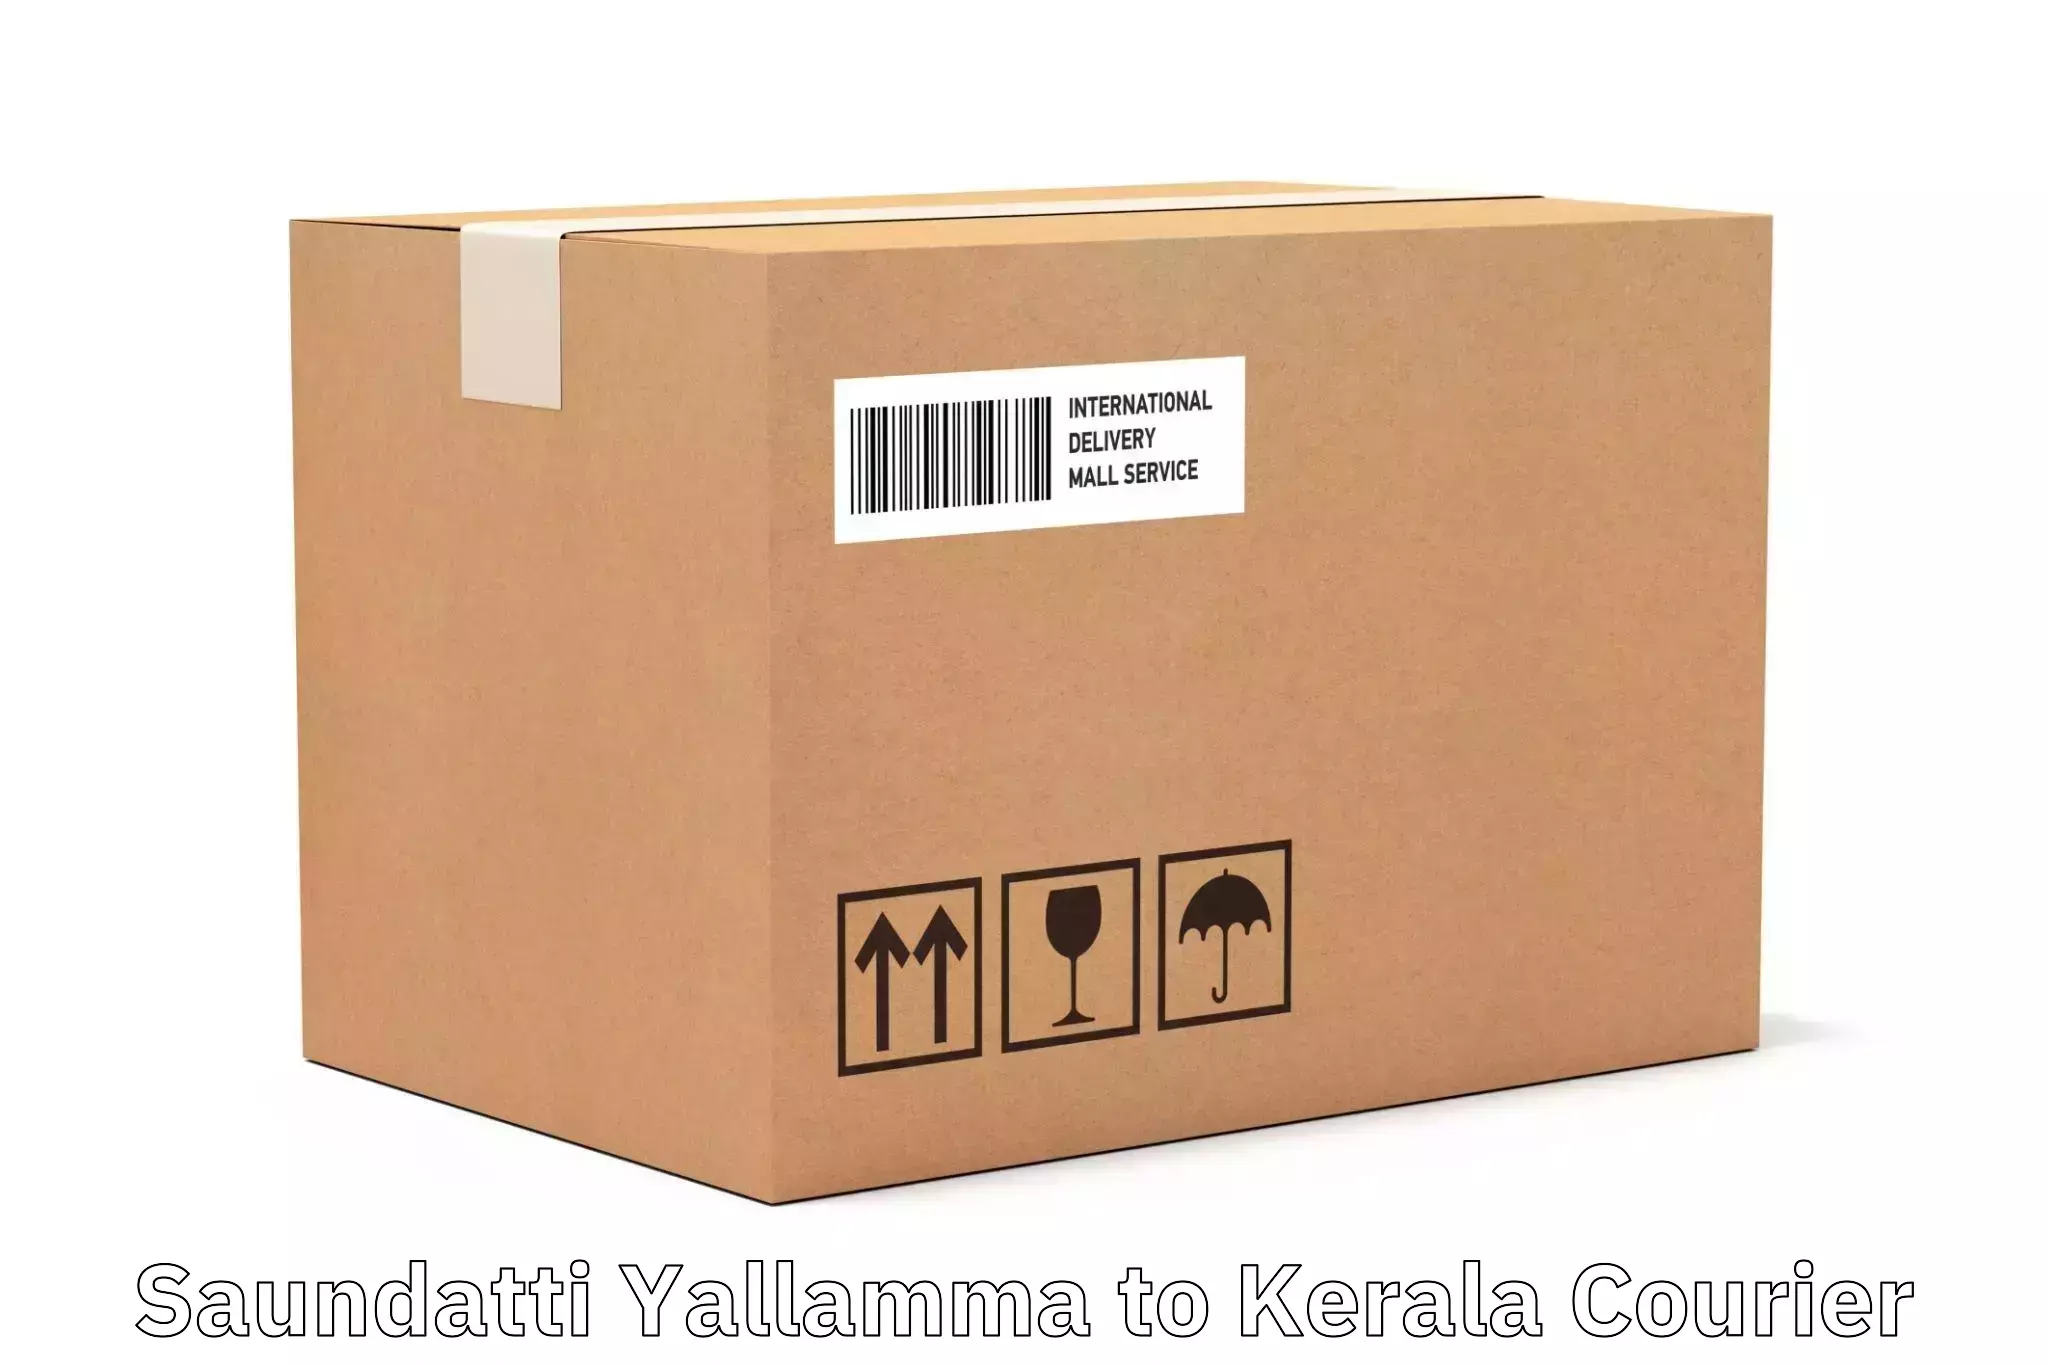 Efficient freight service Saundatti Yallamma to Kazhakkoottam